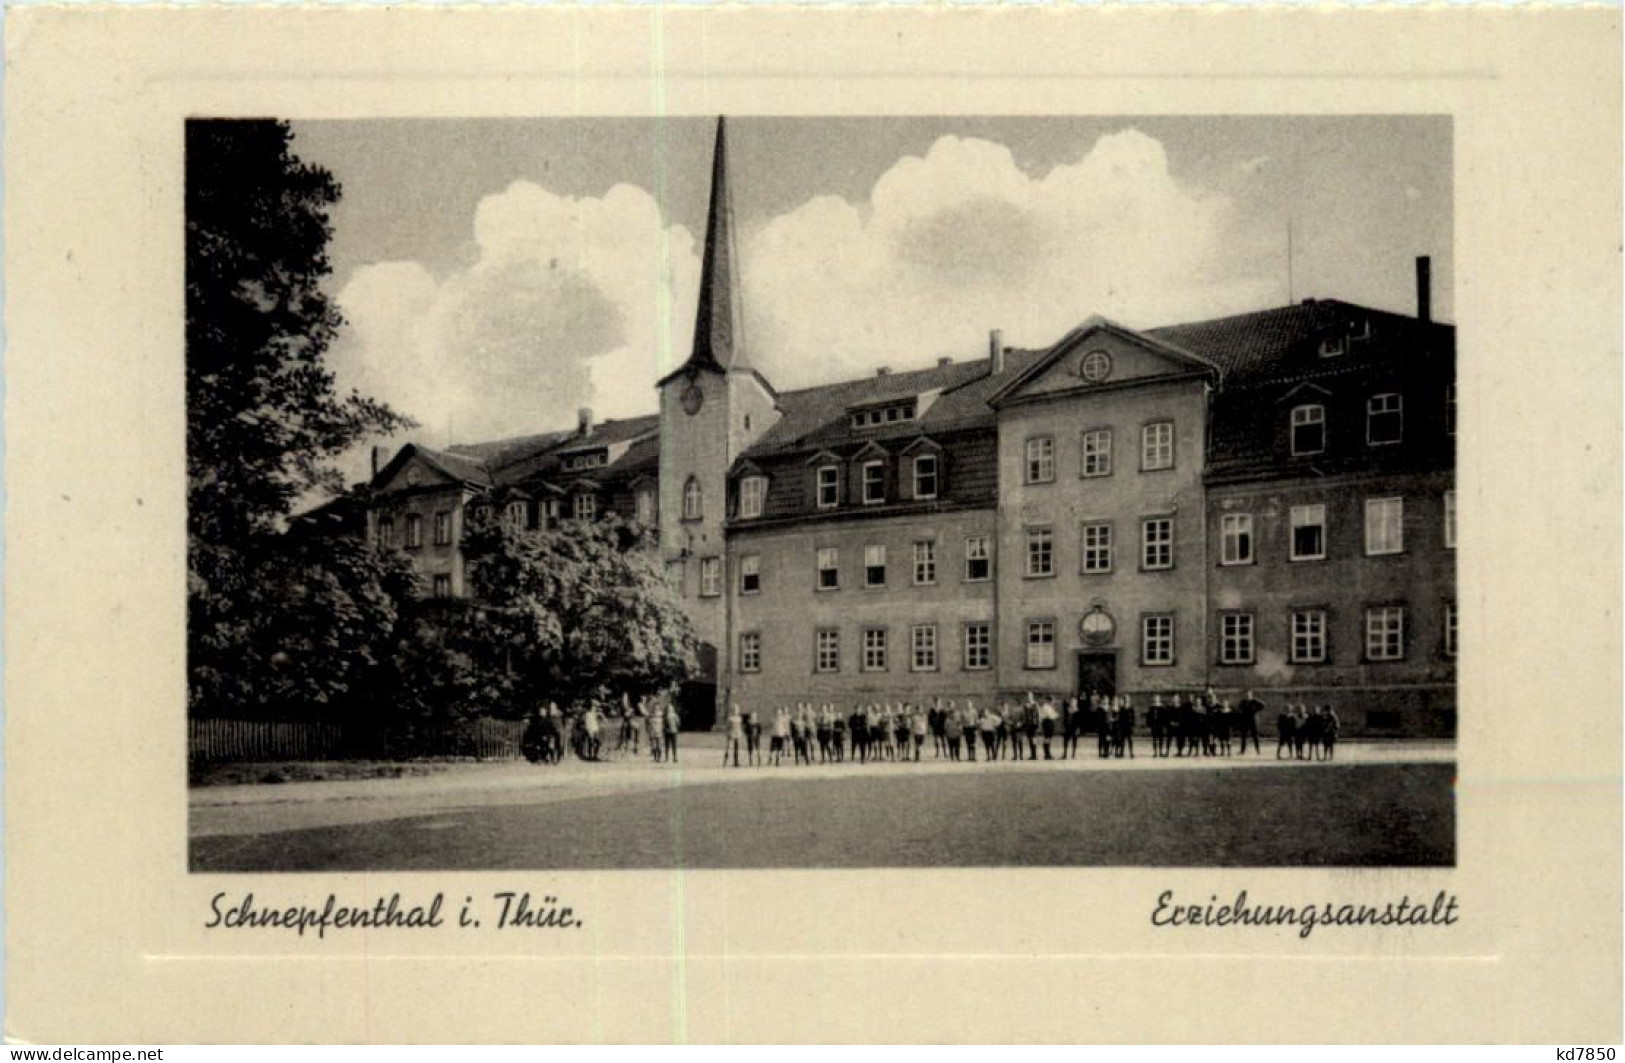 Schnepfenthal, Erziehungsanstalt - Waltershausen